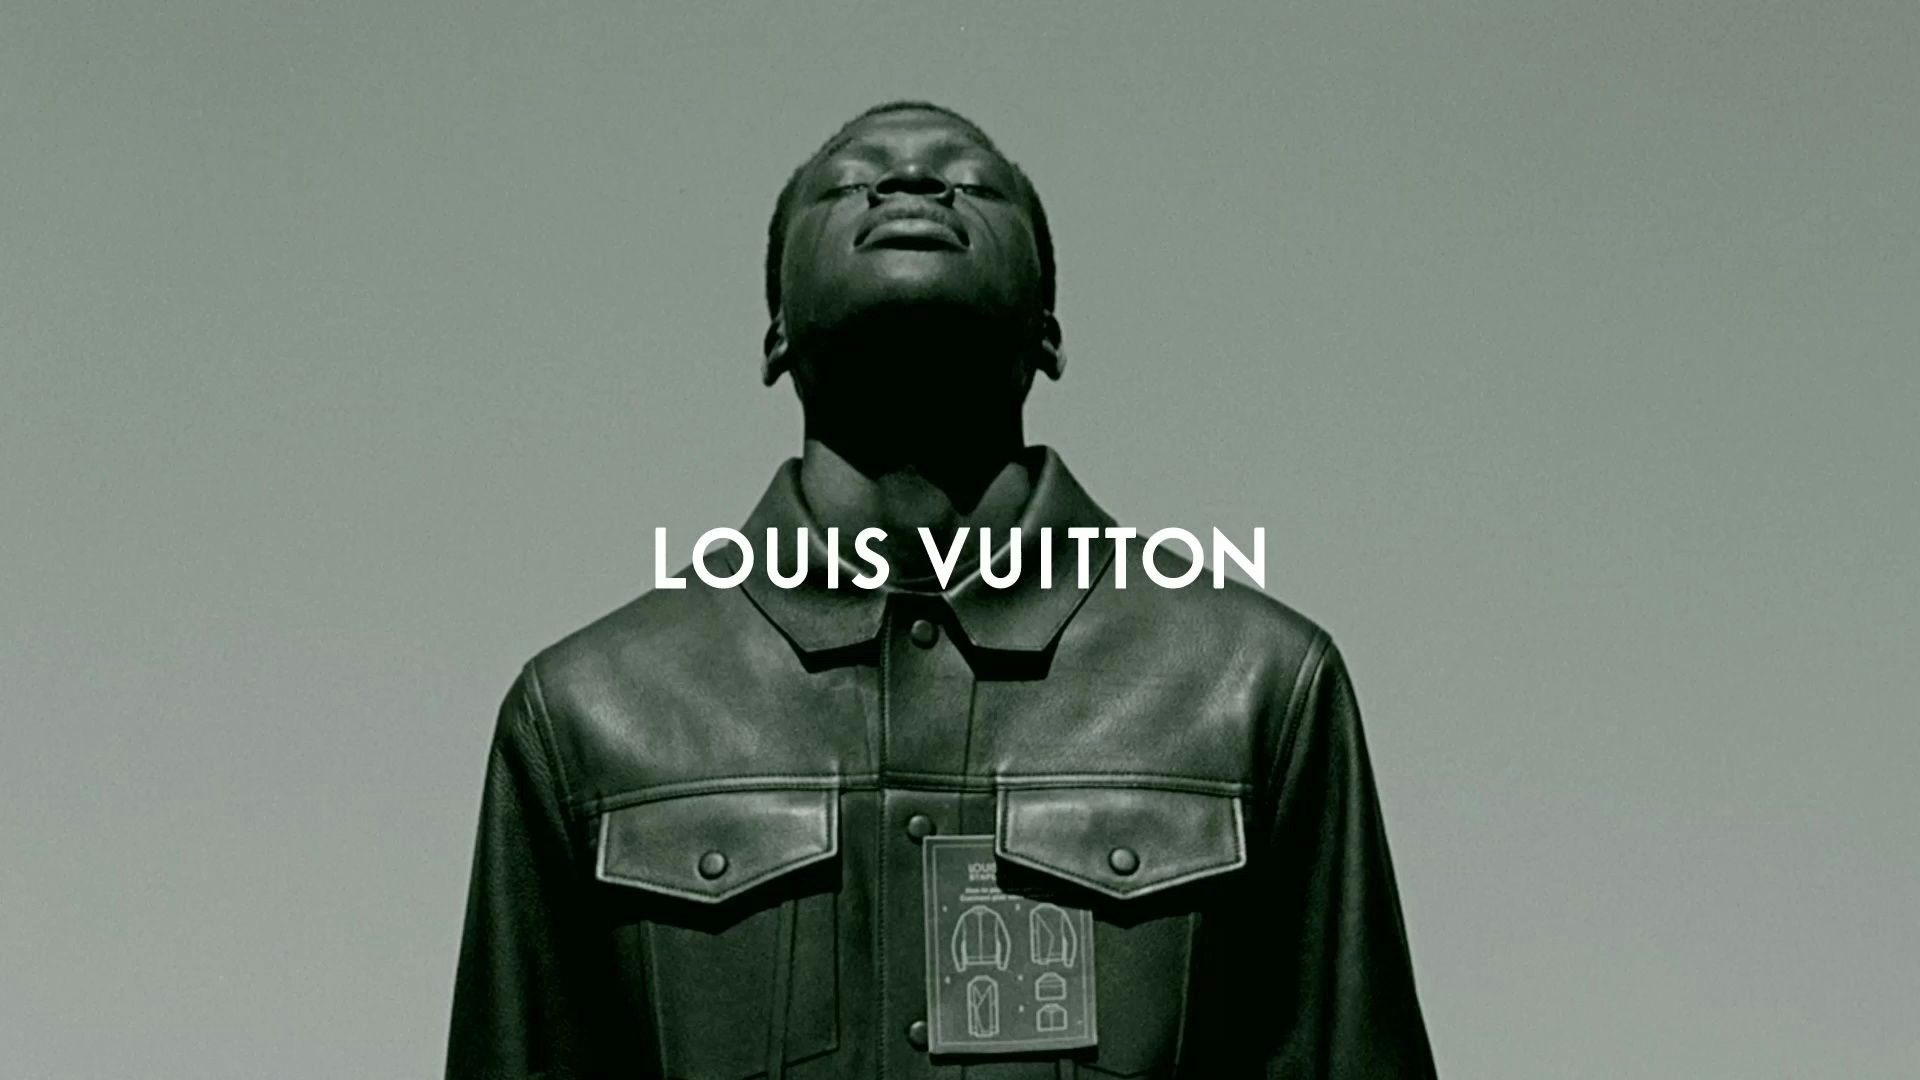 Louis Vuitton Men's SS19, Mortis Studio, Creative Agency